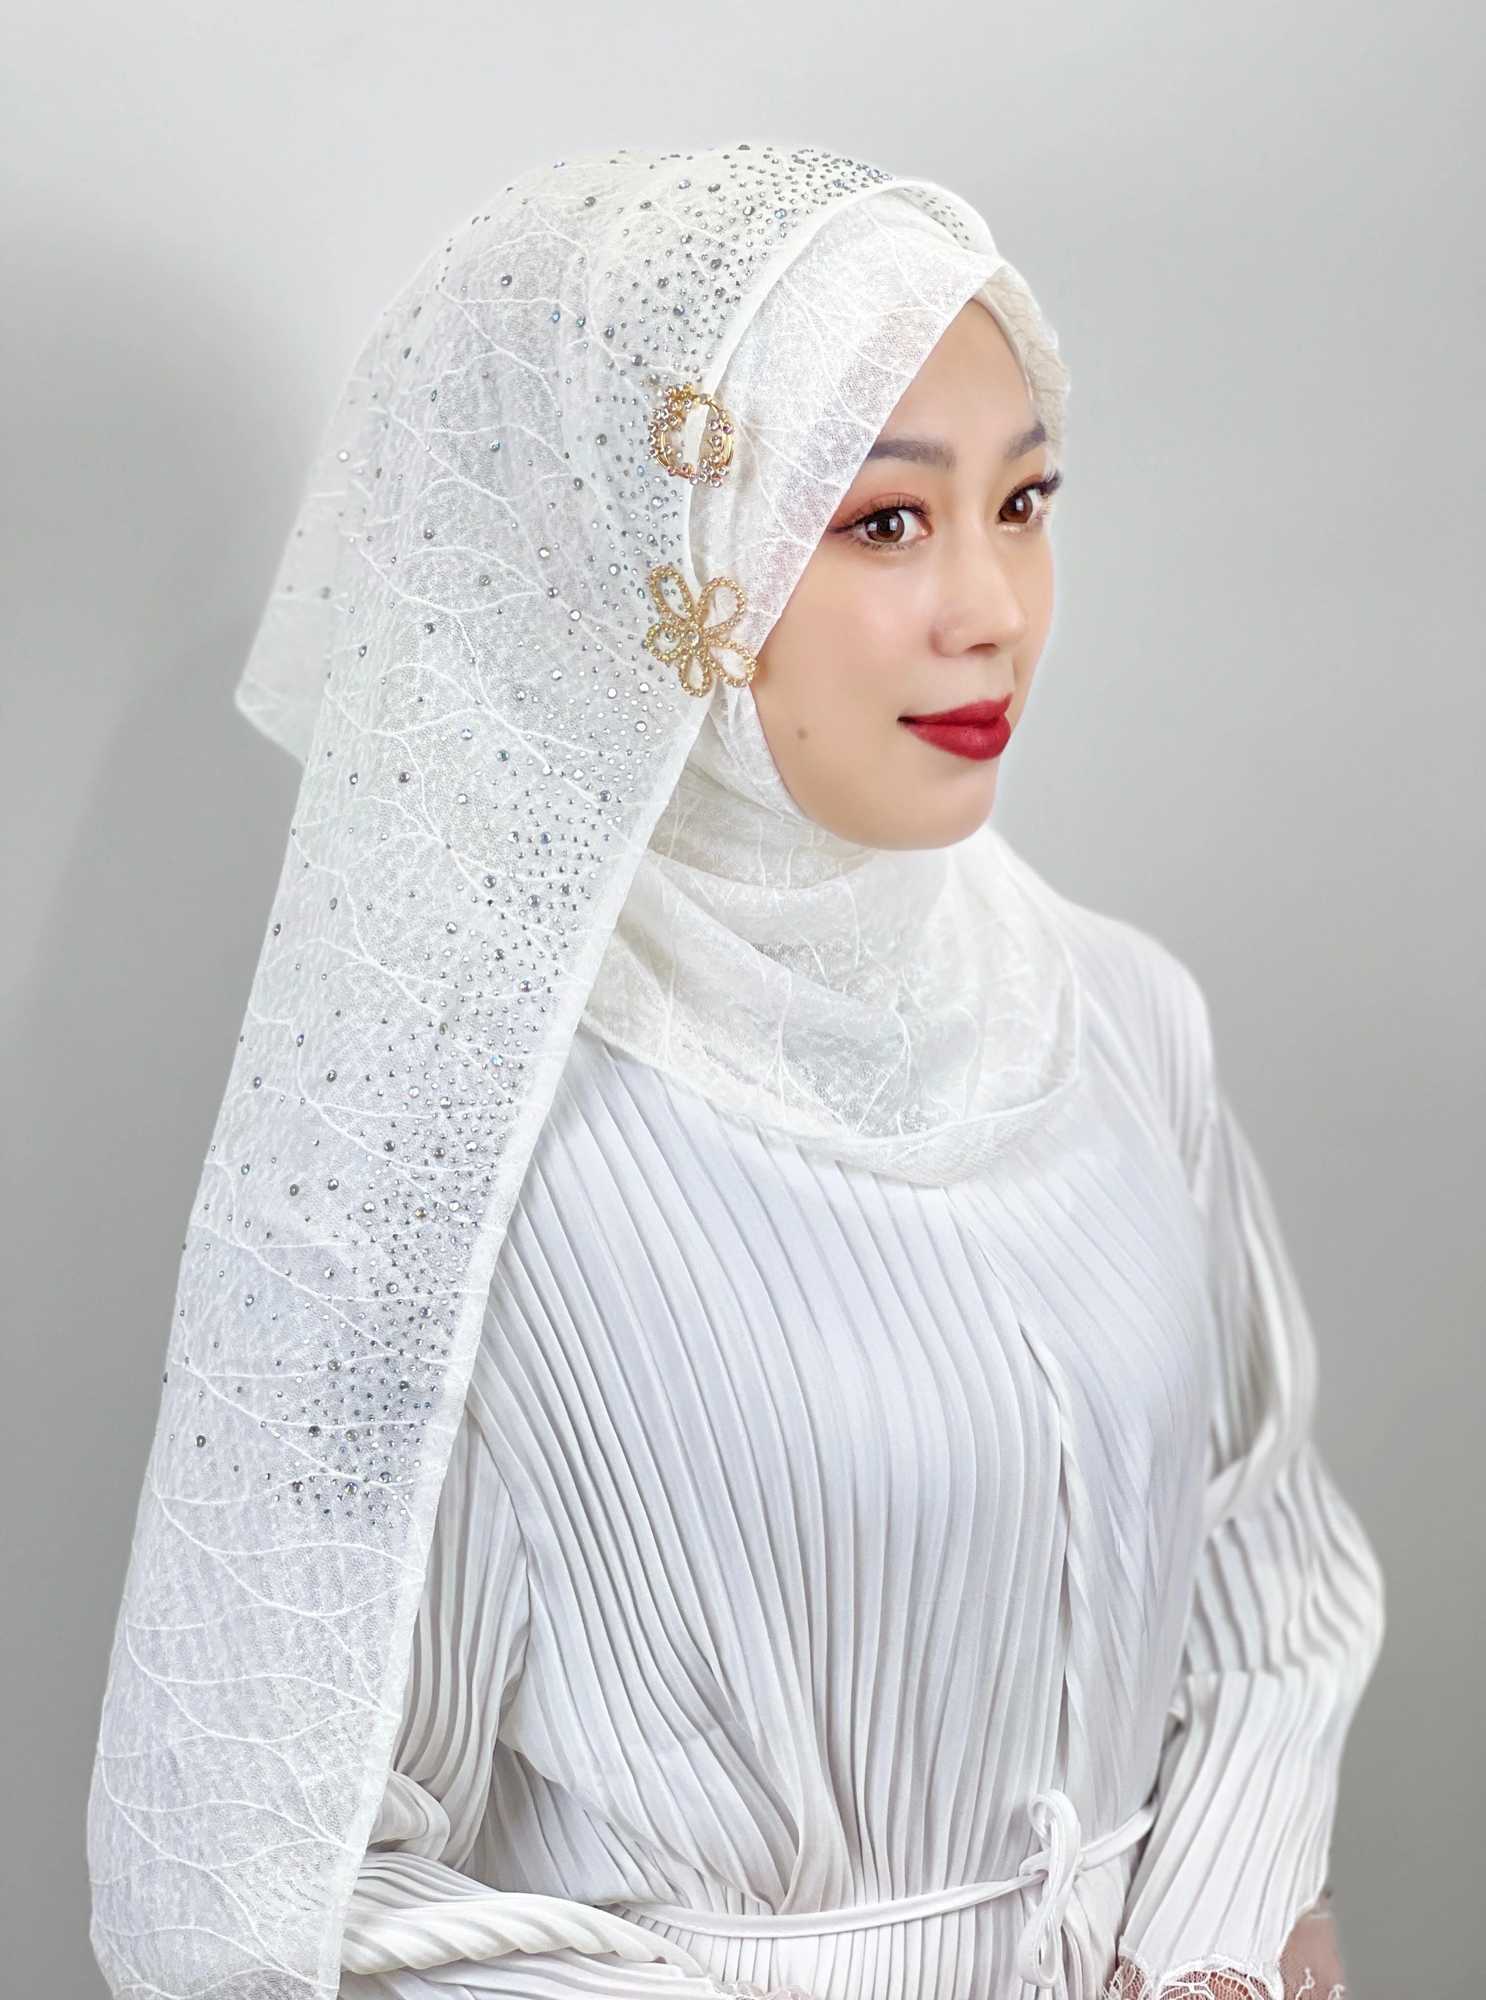 ヒジャーブイスラム教徒ヒジャーブメッシュテクスチャターバンホットダイヤモンドエレガントイスラム教徒の女性ヒジャーブはヘアアクセサリーヒジャーブイスラム教徒スカーフD240425を送る